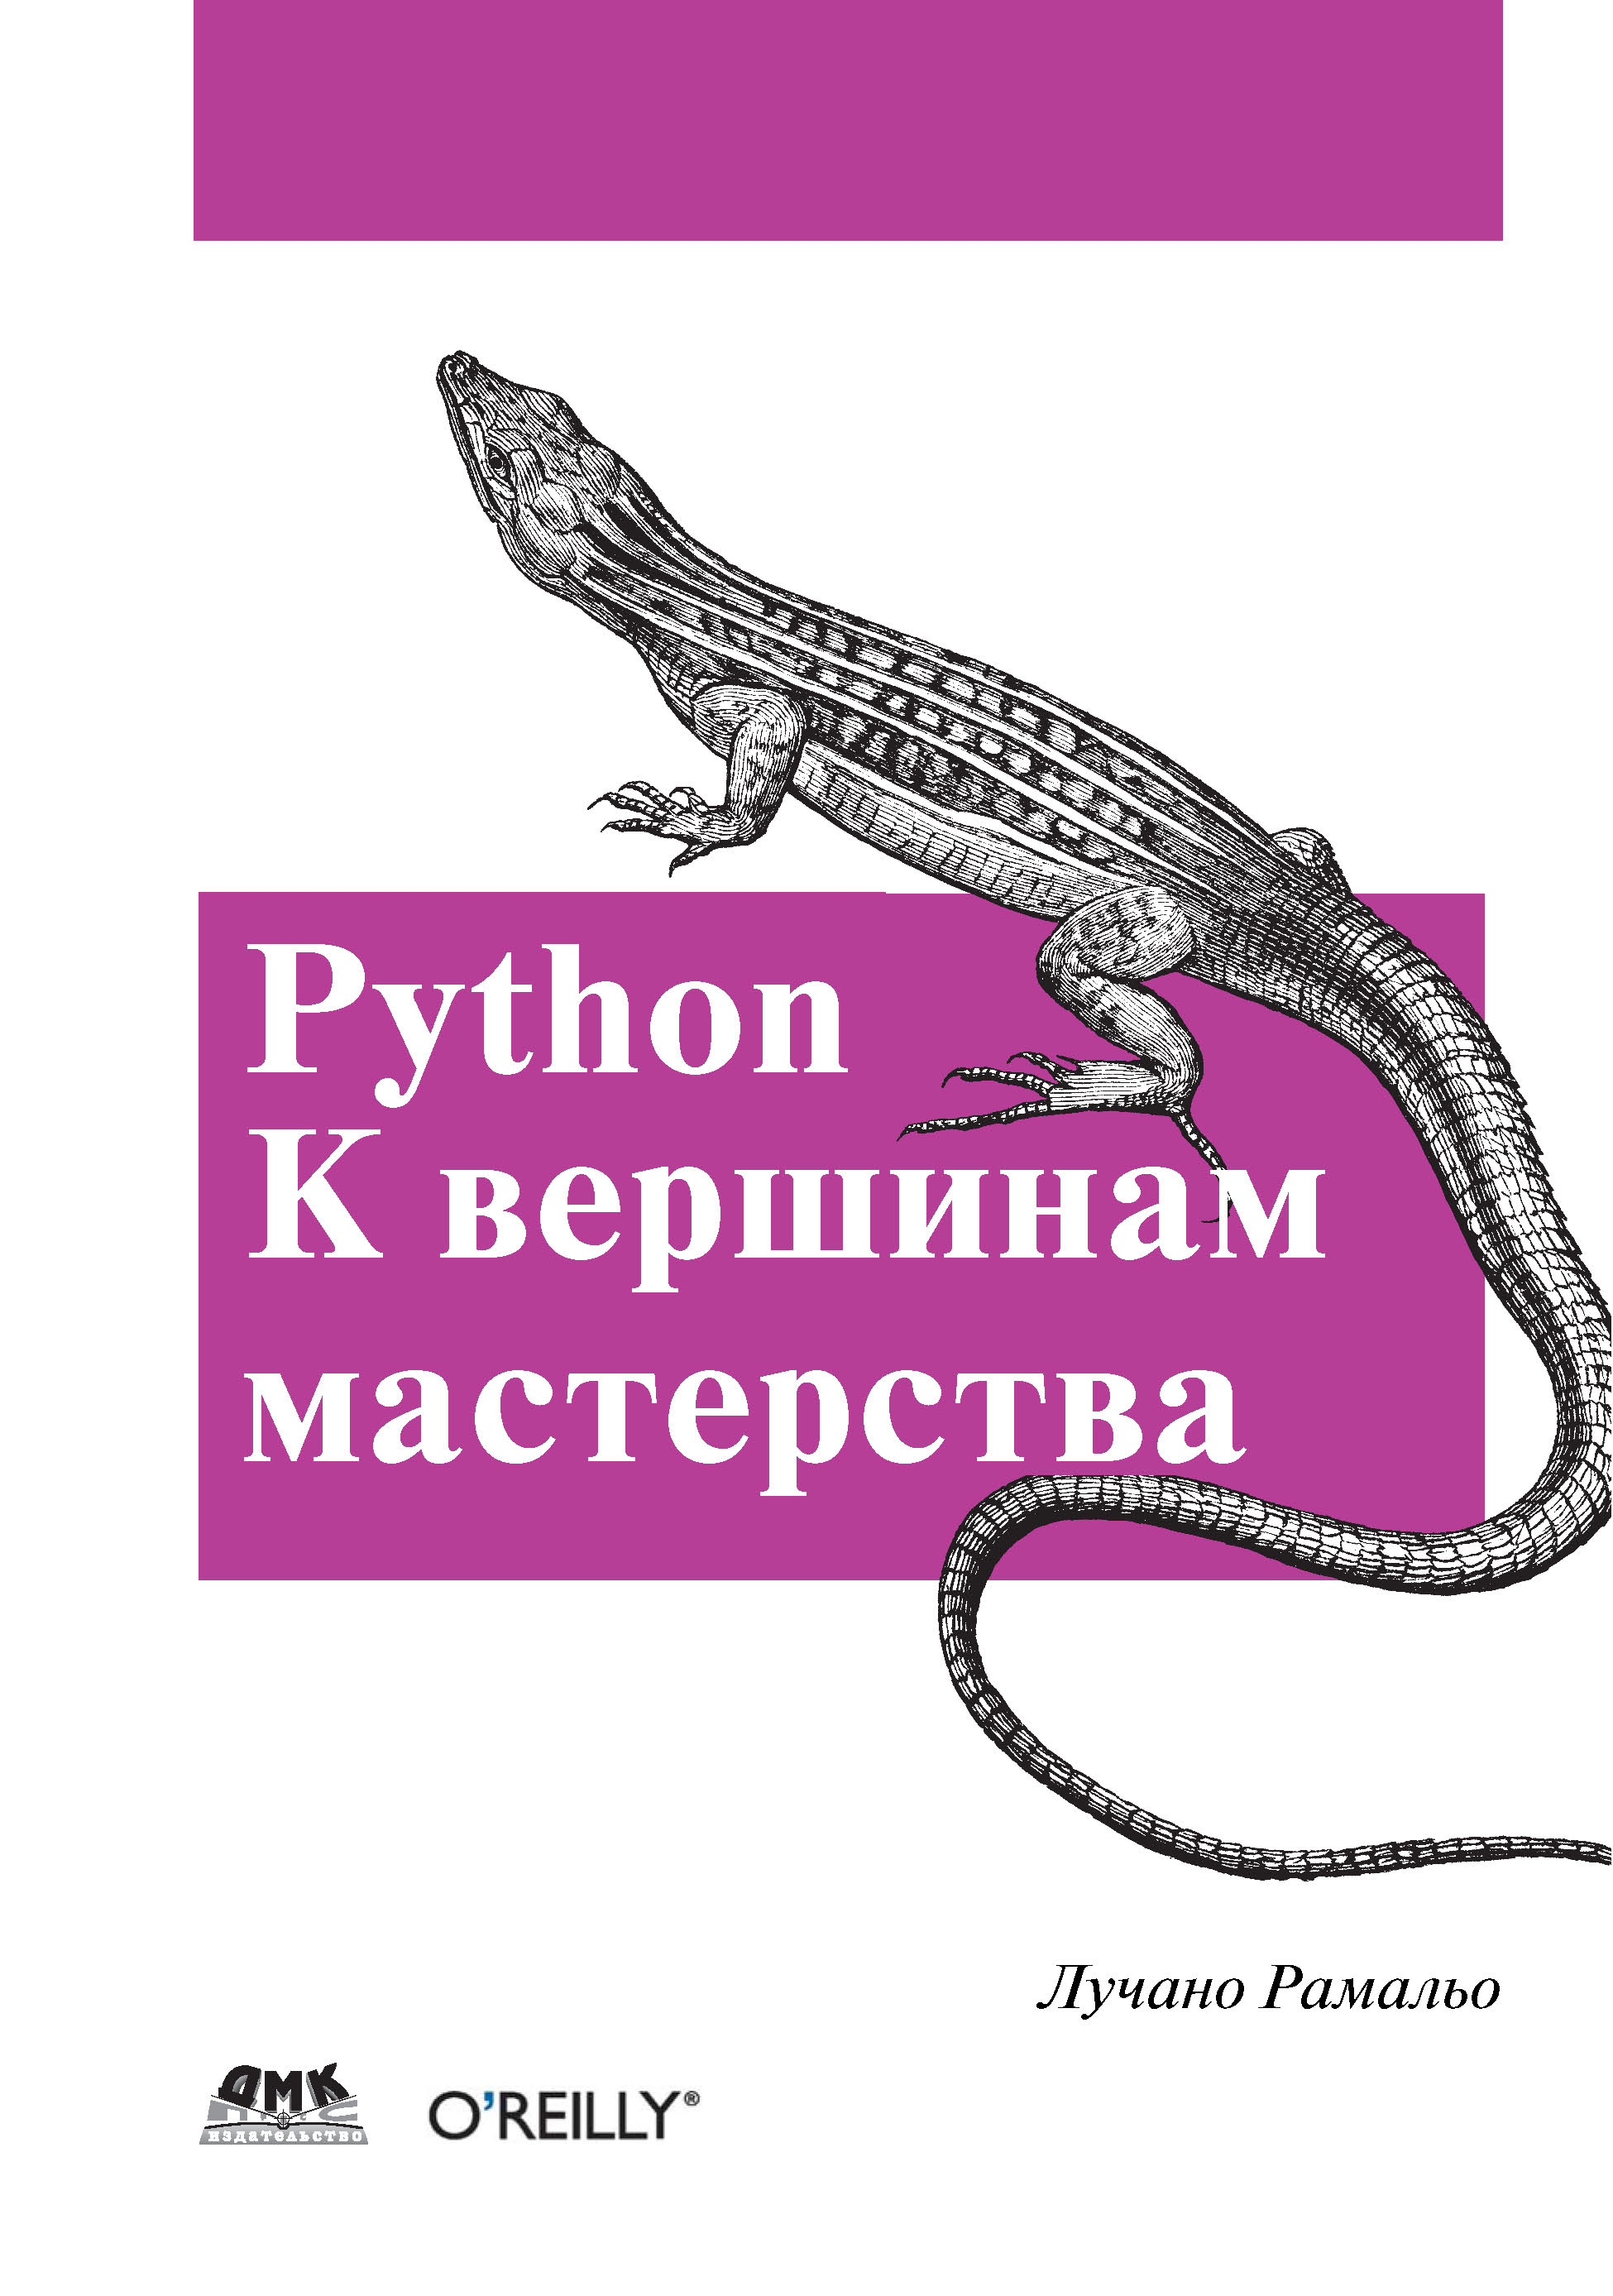 Книга  Python. К вершинам мастерства созданная Лучано Рамальо, А. А. Слинкин может относится к жанру зарубежная компьютерная литература, программирование. Стоимость электронной книги Python. К вершинам мастерства с идентификатором 22805846 составляет 990.00 руб.